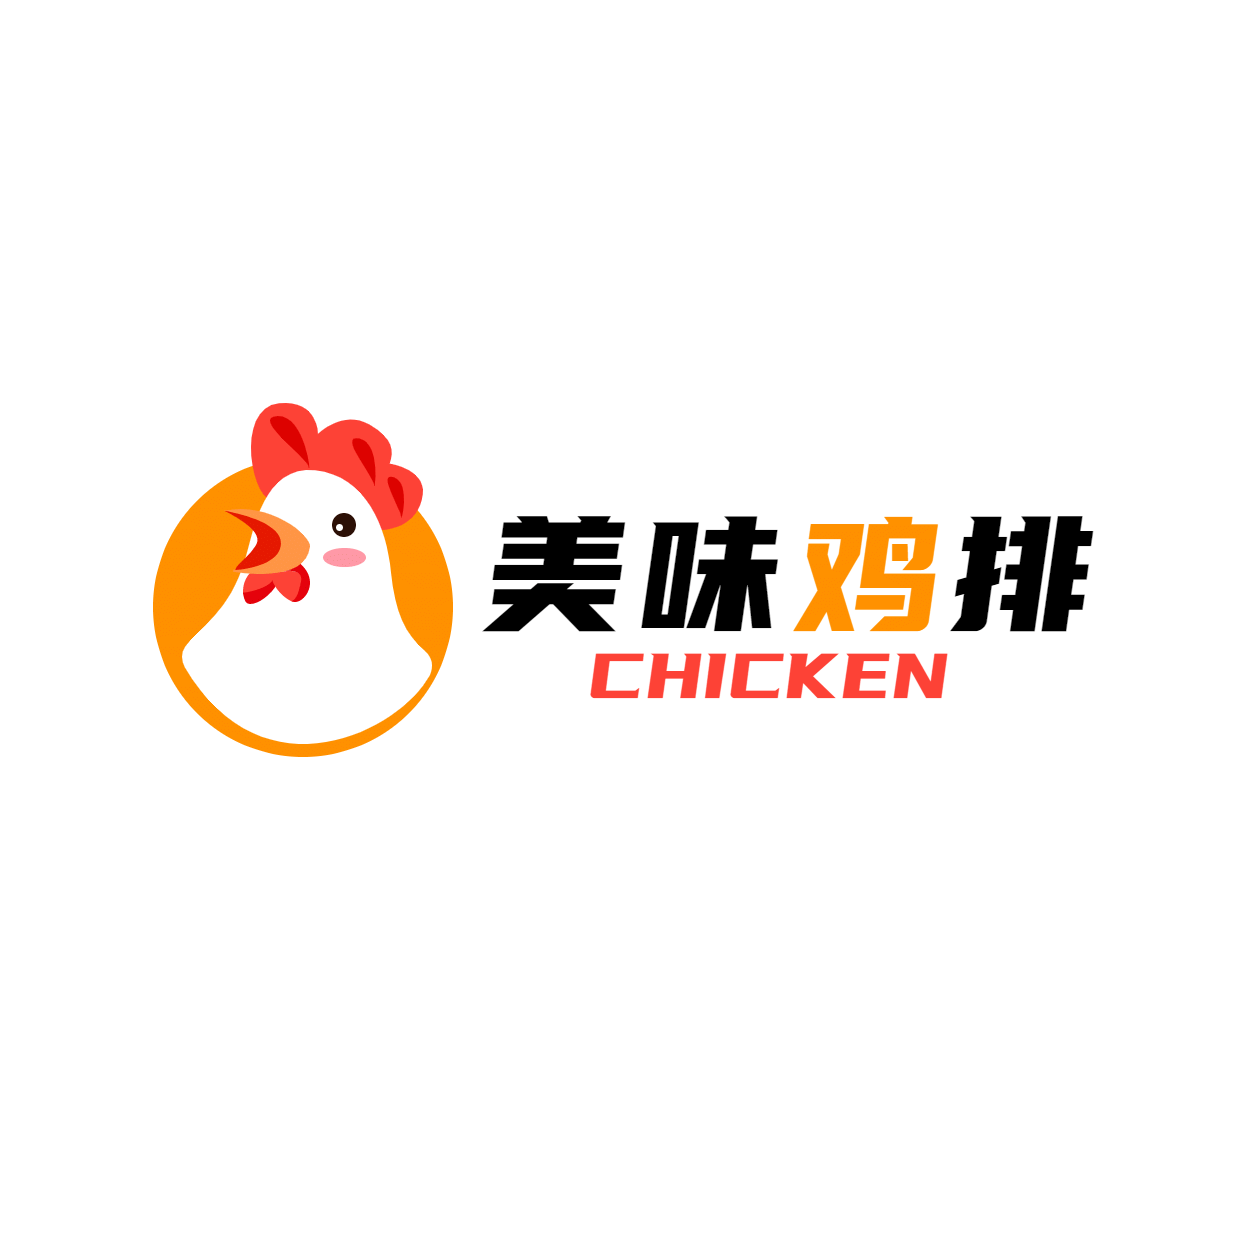 鸡排炸鸡企业宣传简约LOGO图形预览效果